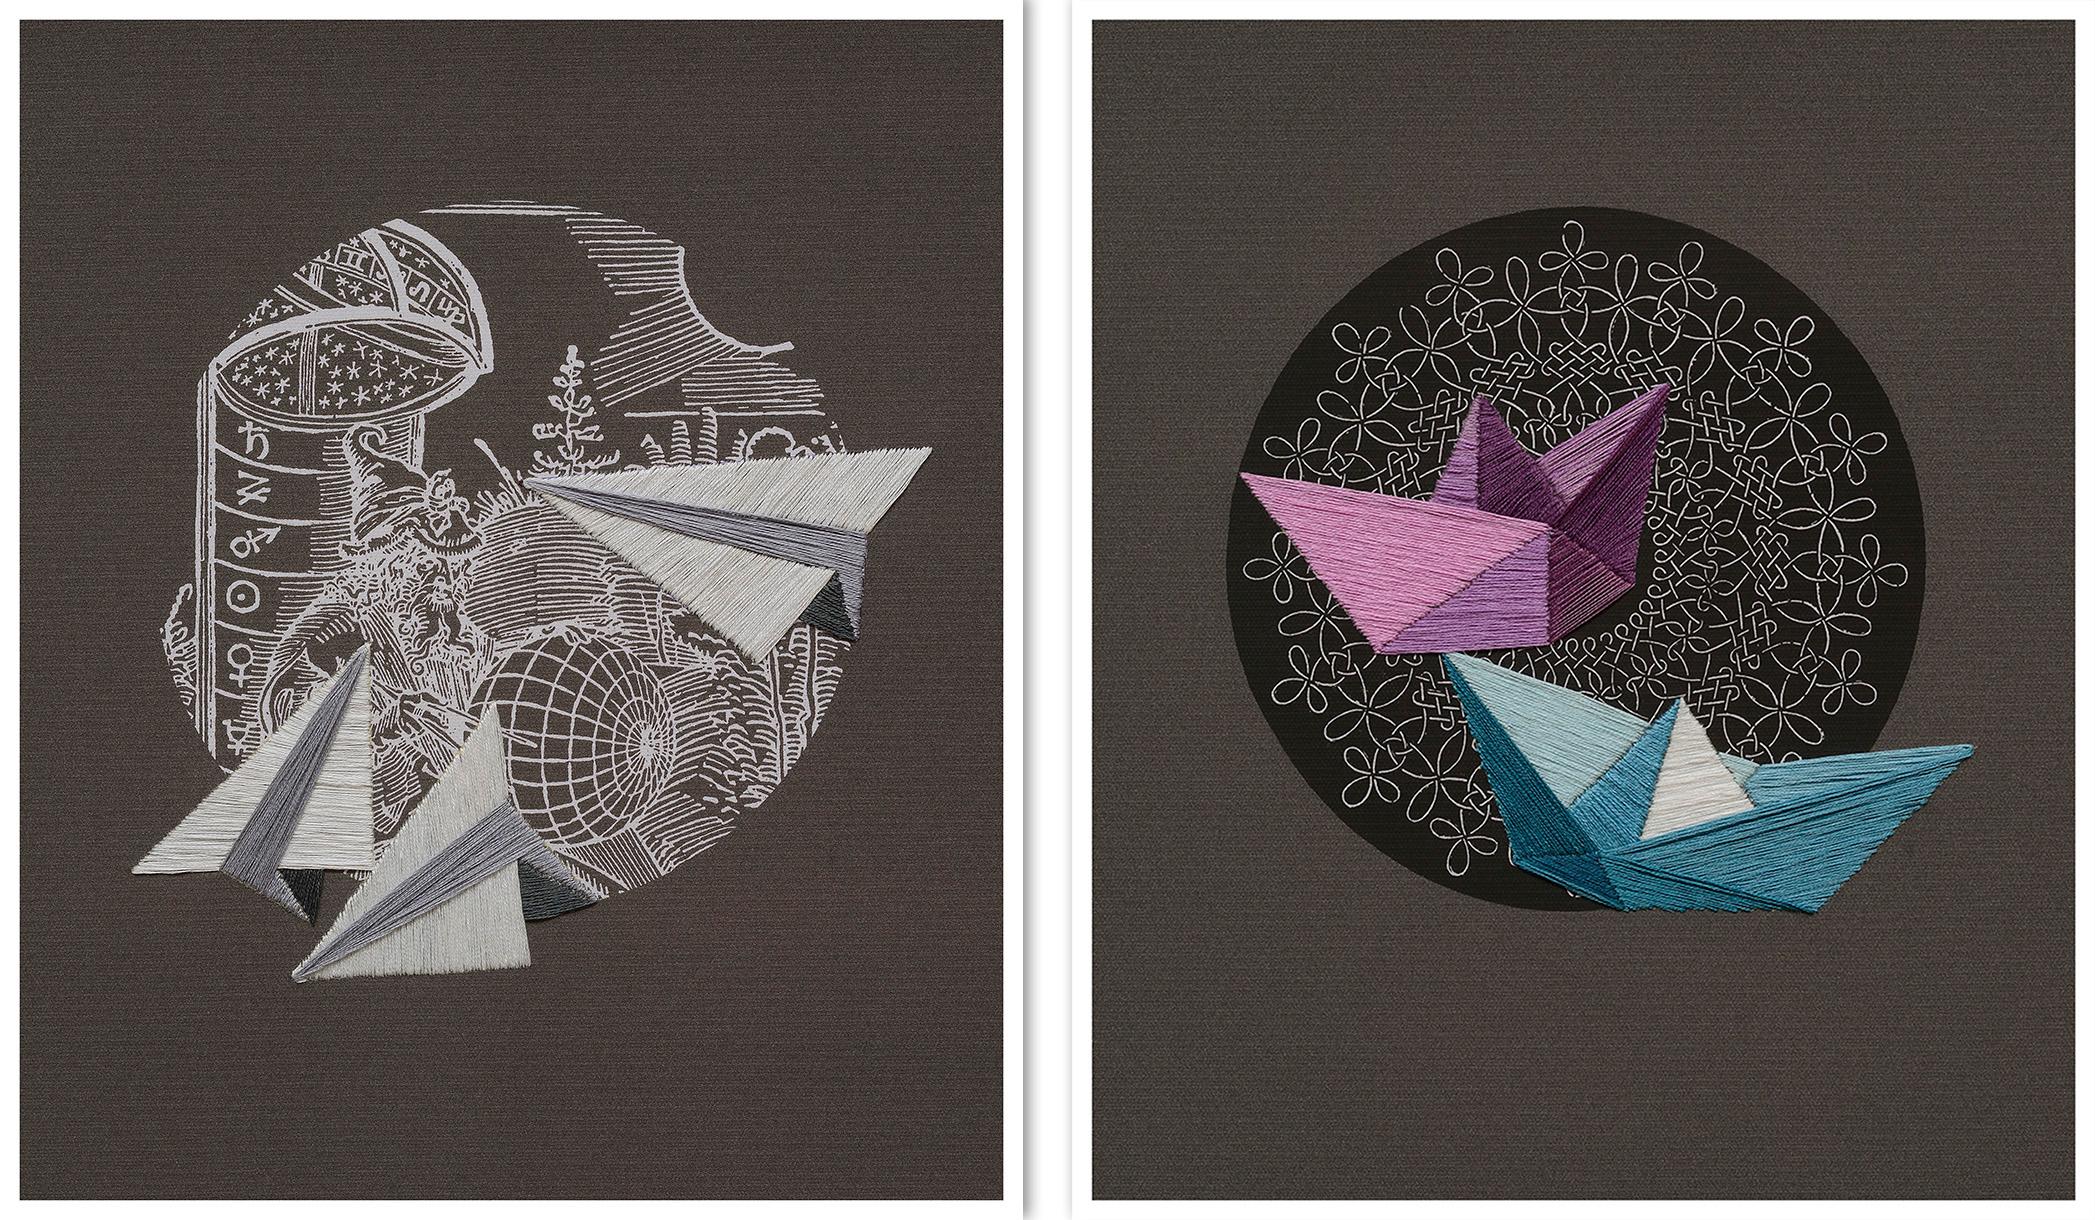 El Mago, und Náufragos inminentes Diptychon. Textilkunst aus der Serie Durero  – Mixed Media Art von Ana Seggiaro